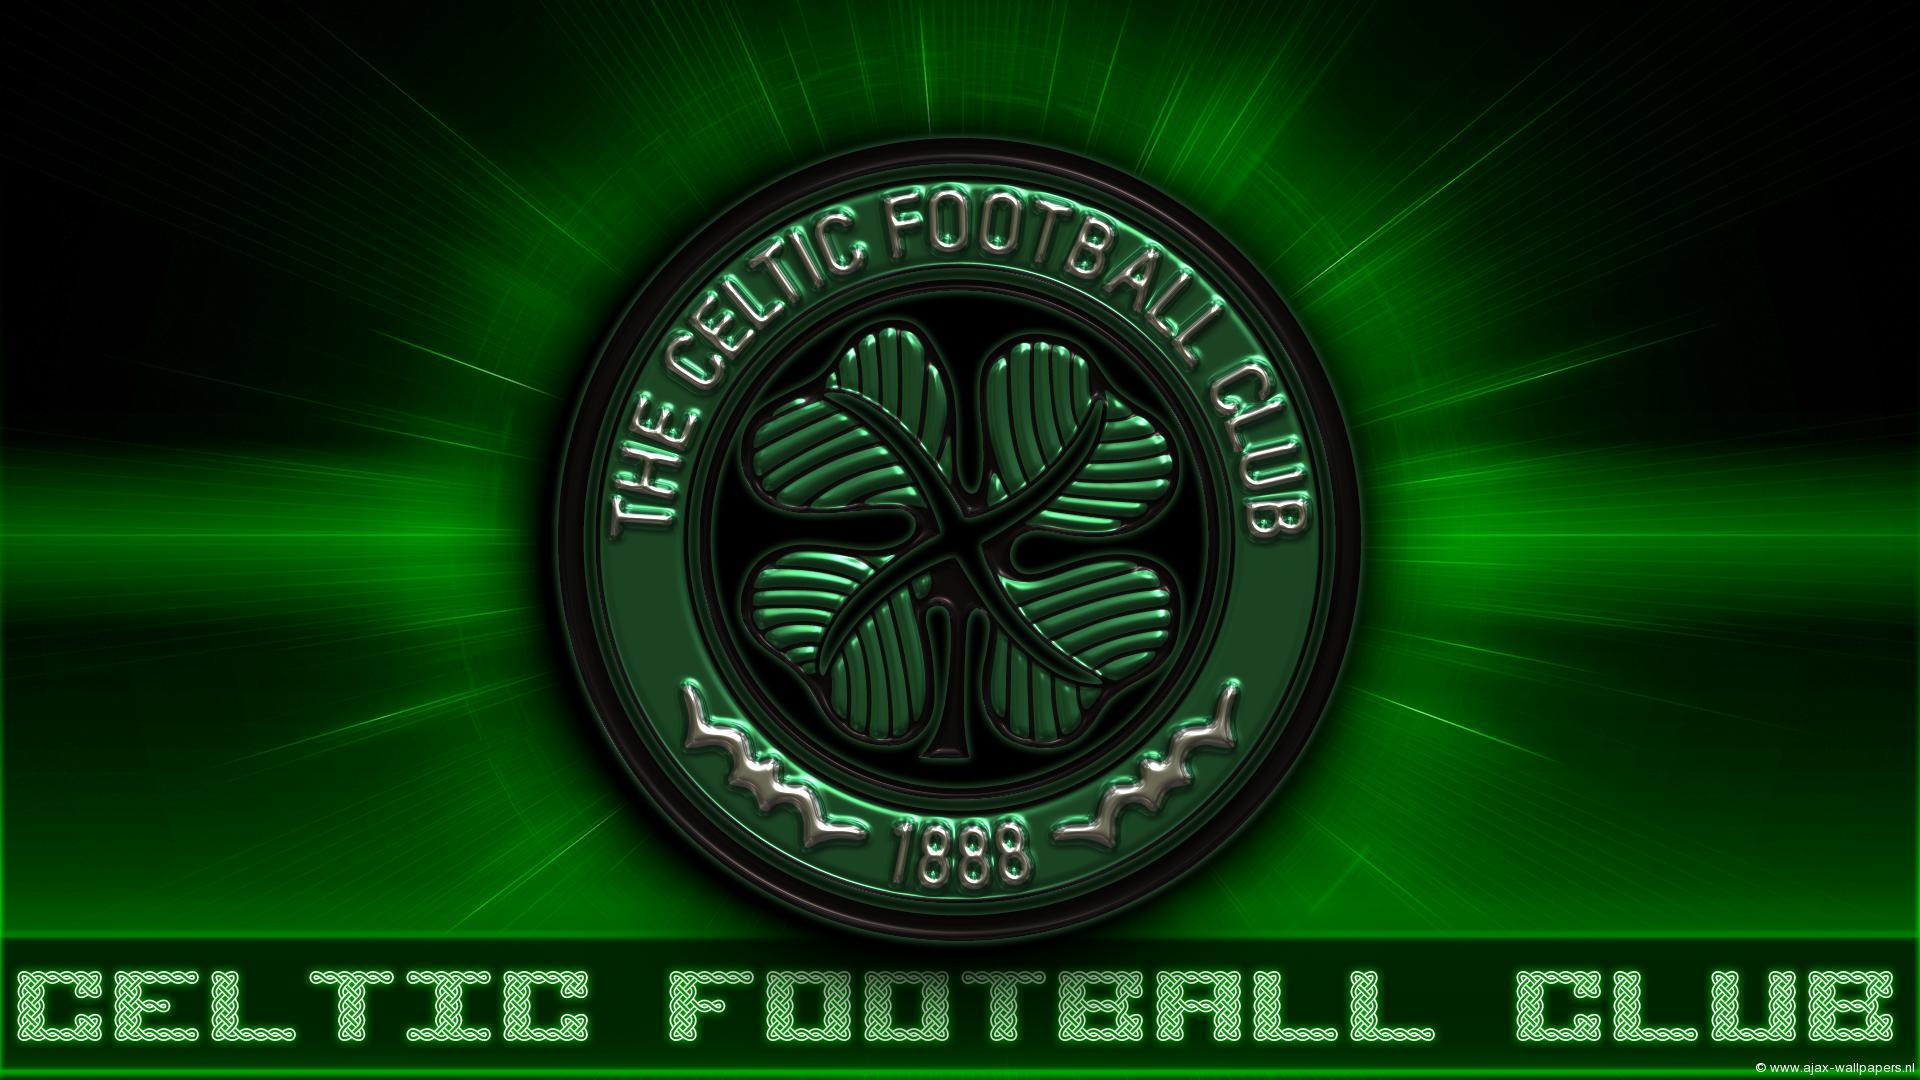 Celtic F.C. Wallpaper 6 X 1080